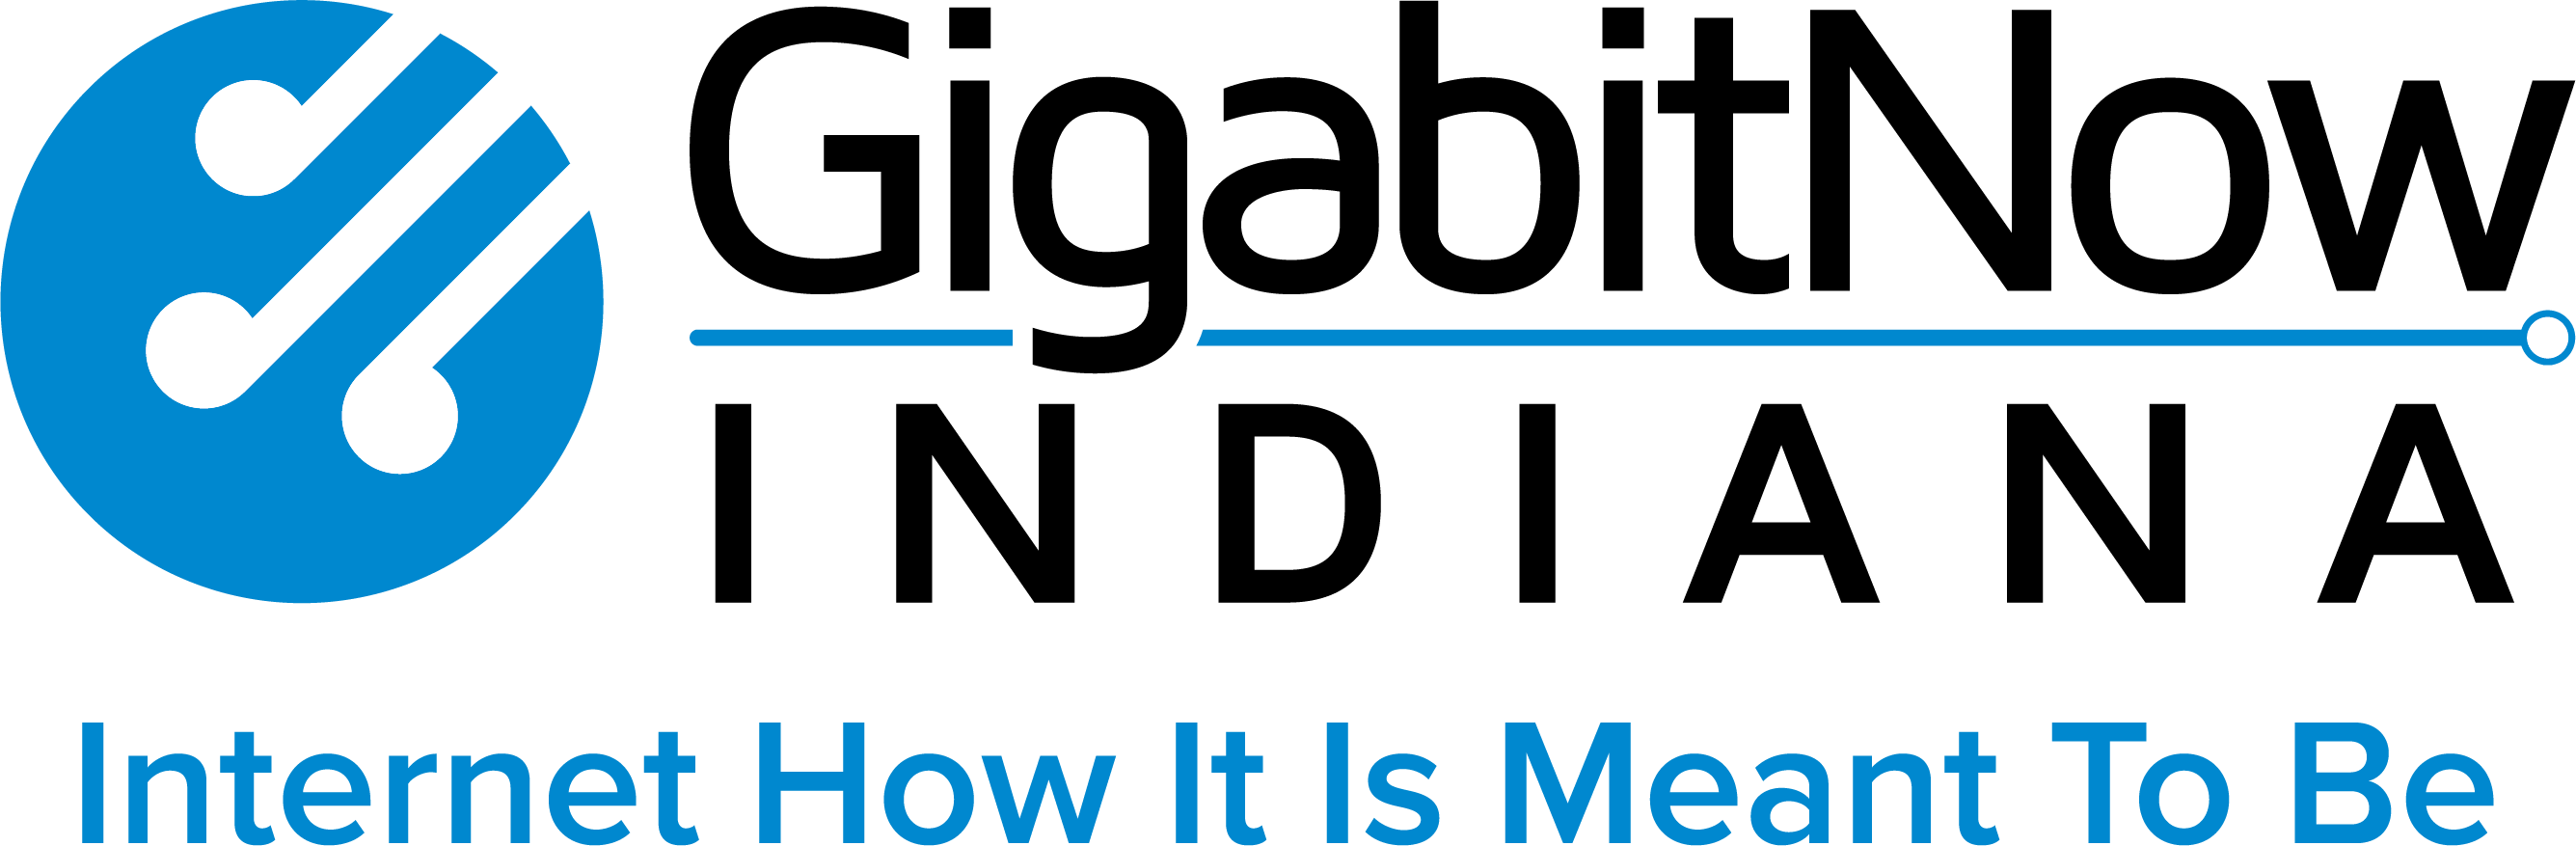 GigabitNow Indiana logo